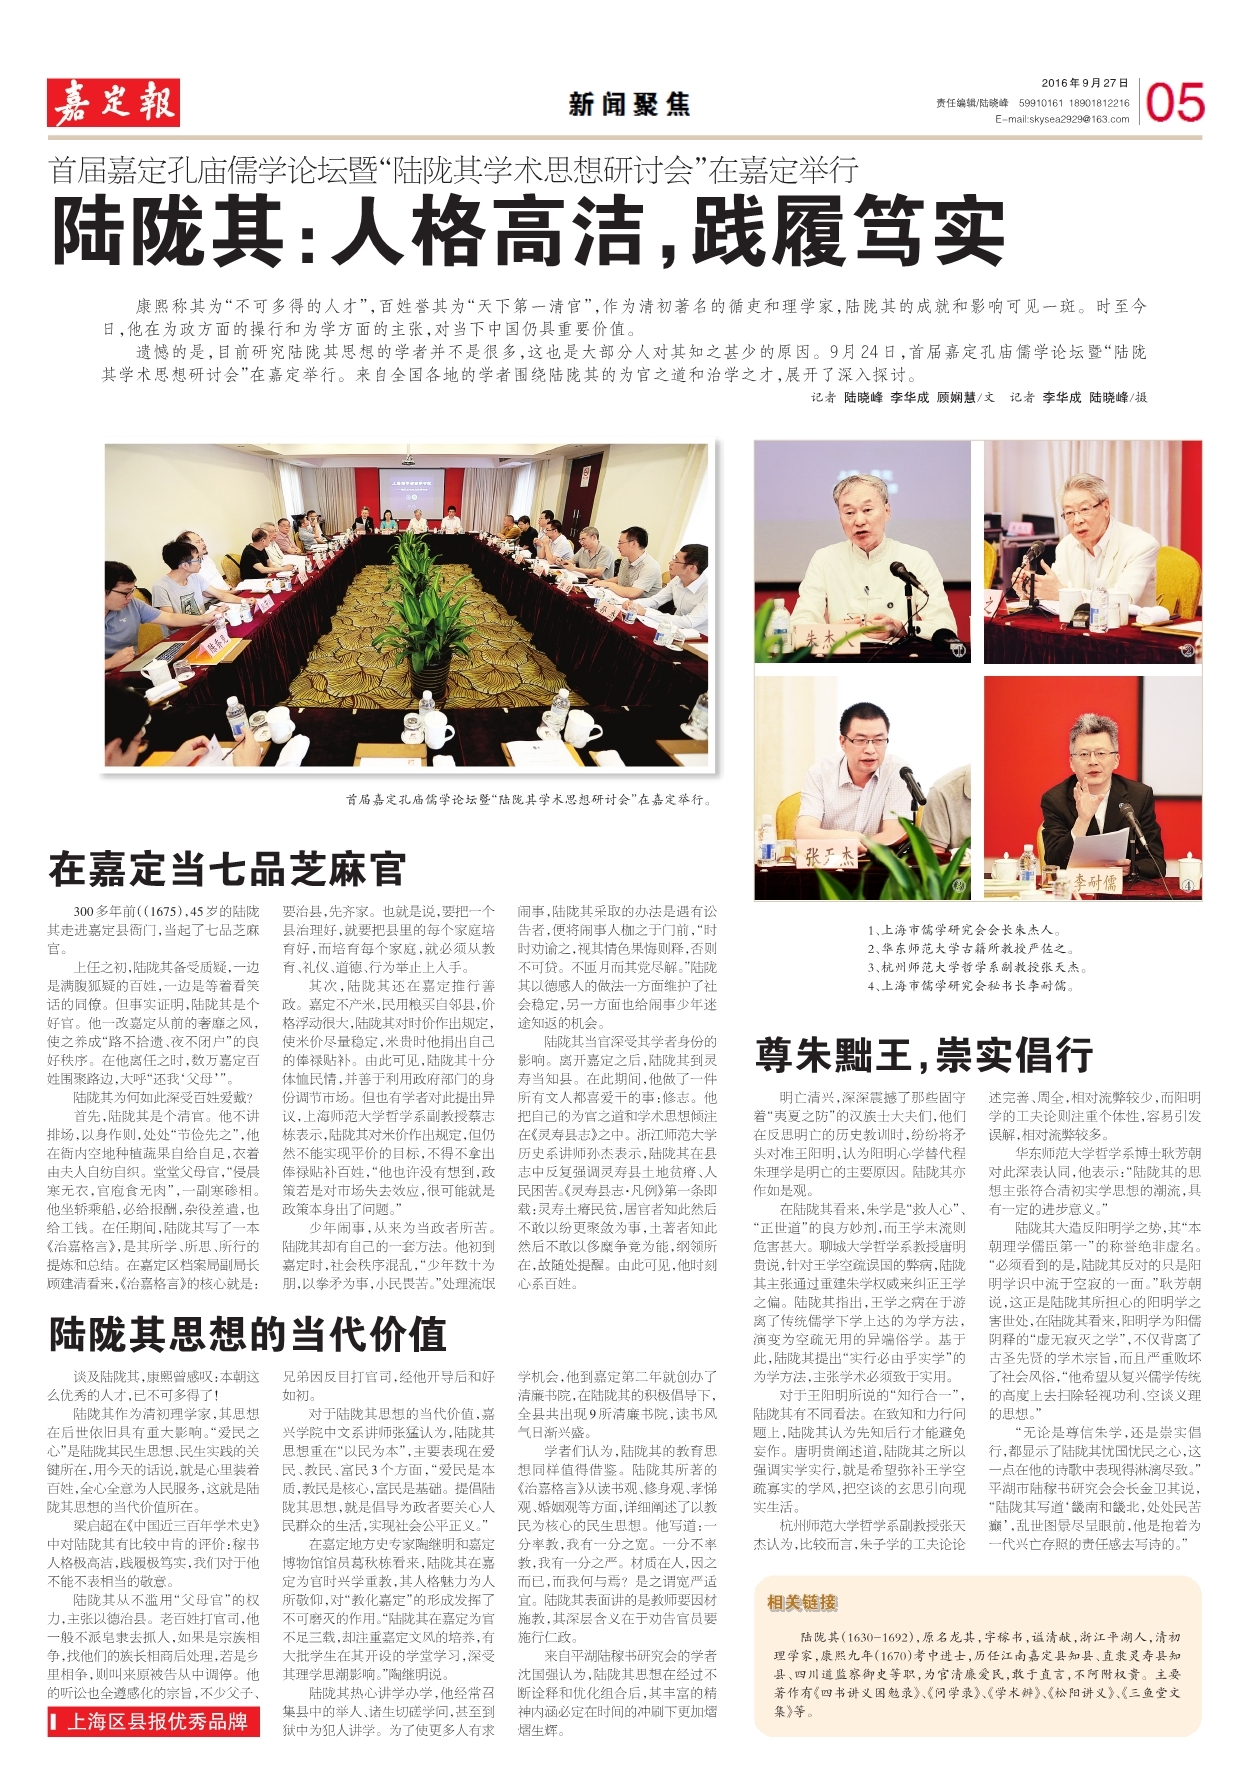 捷讯：陆洁6月16日南京高分通过RHCE认证。 | 《Linux就该这么学》